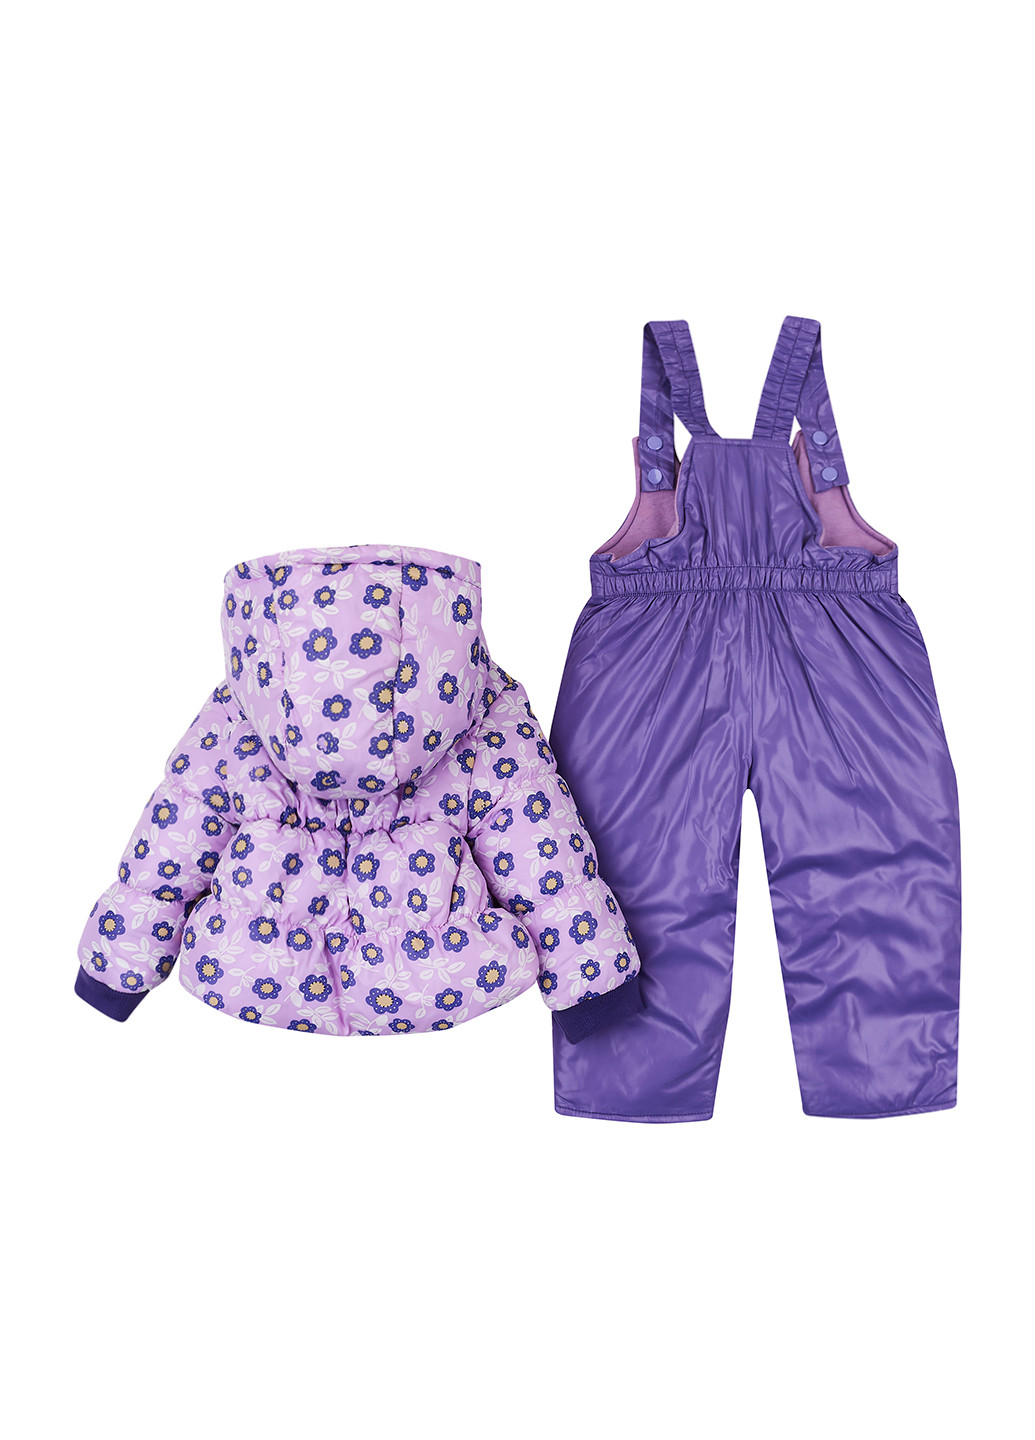 Фиолетовый демисезонный костюм (куртка, полукомбинезон) Aimico